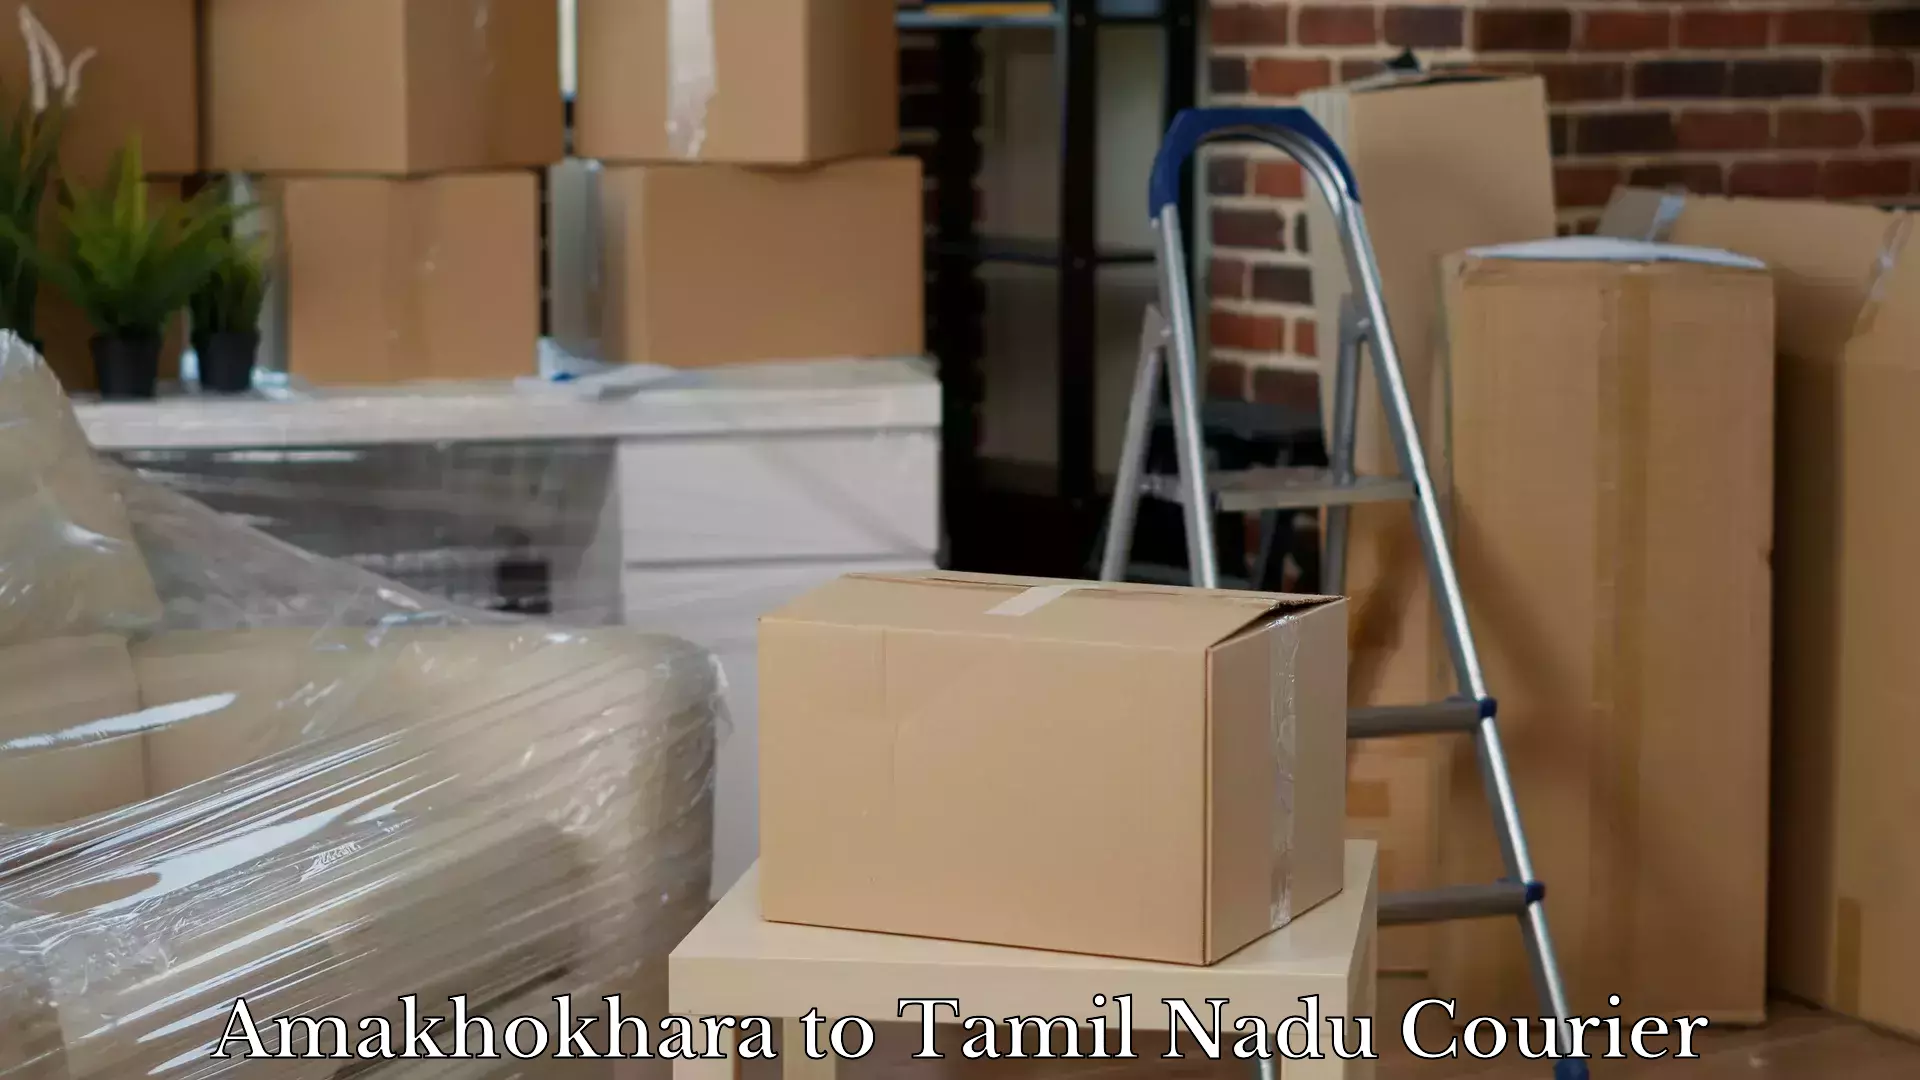 Luggage delivery logistics Amakhokhara to Chennai Port